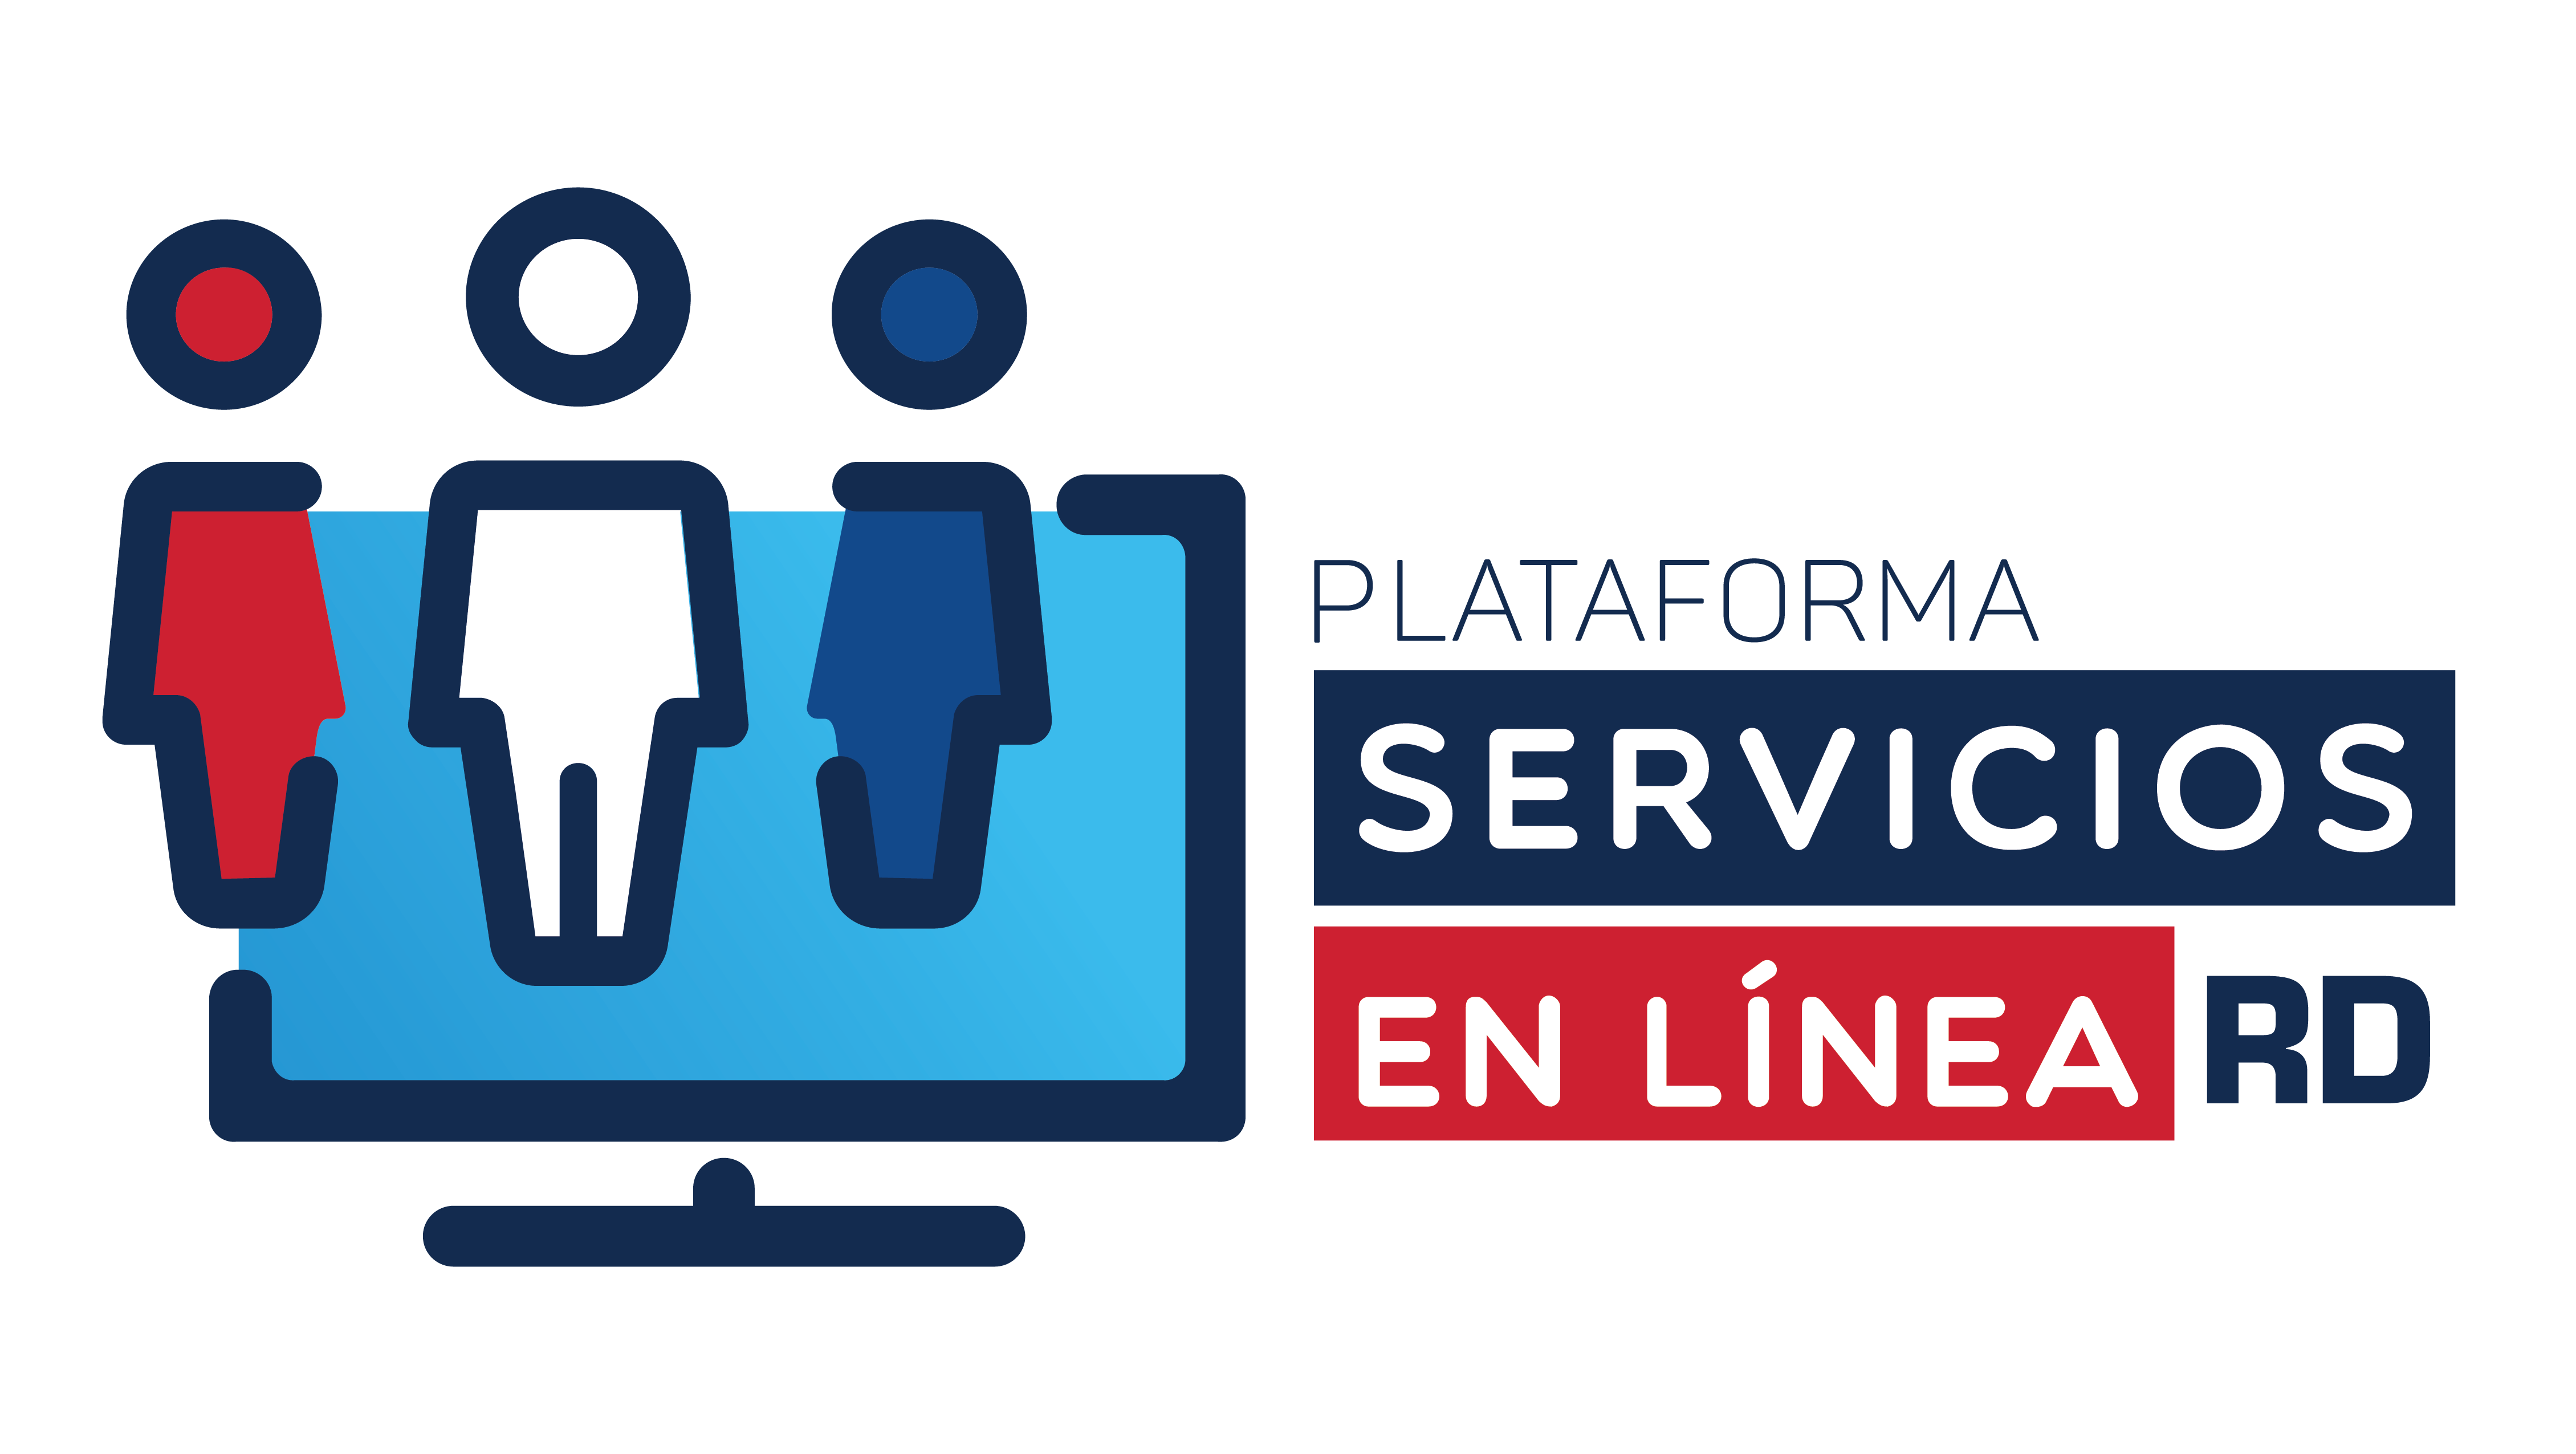 Plataforma de servicios en linea RD